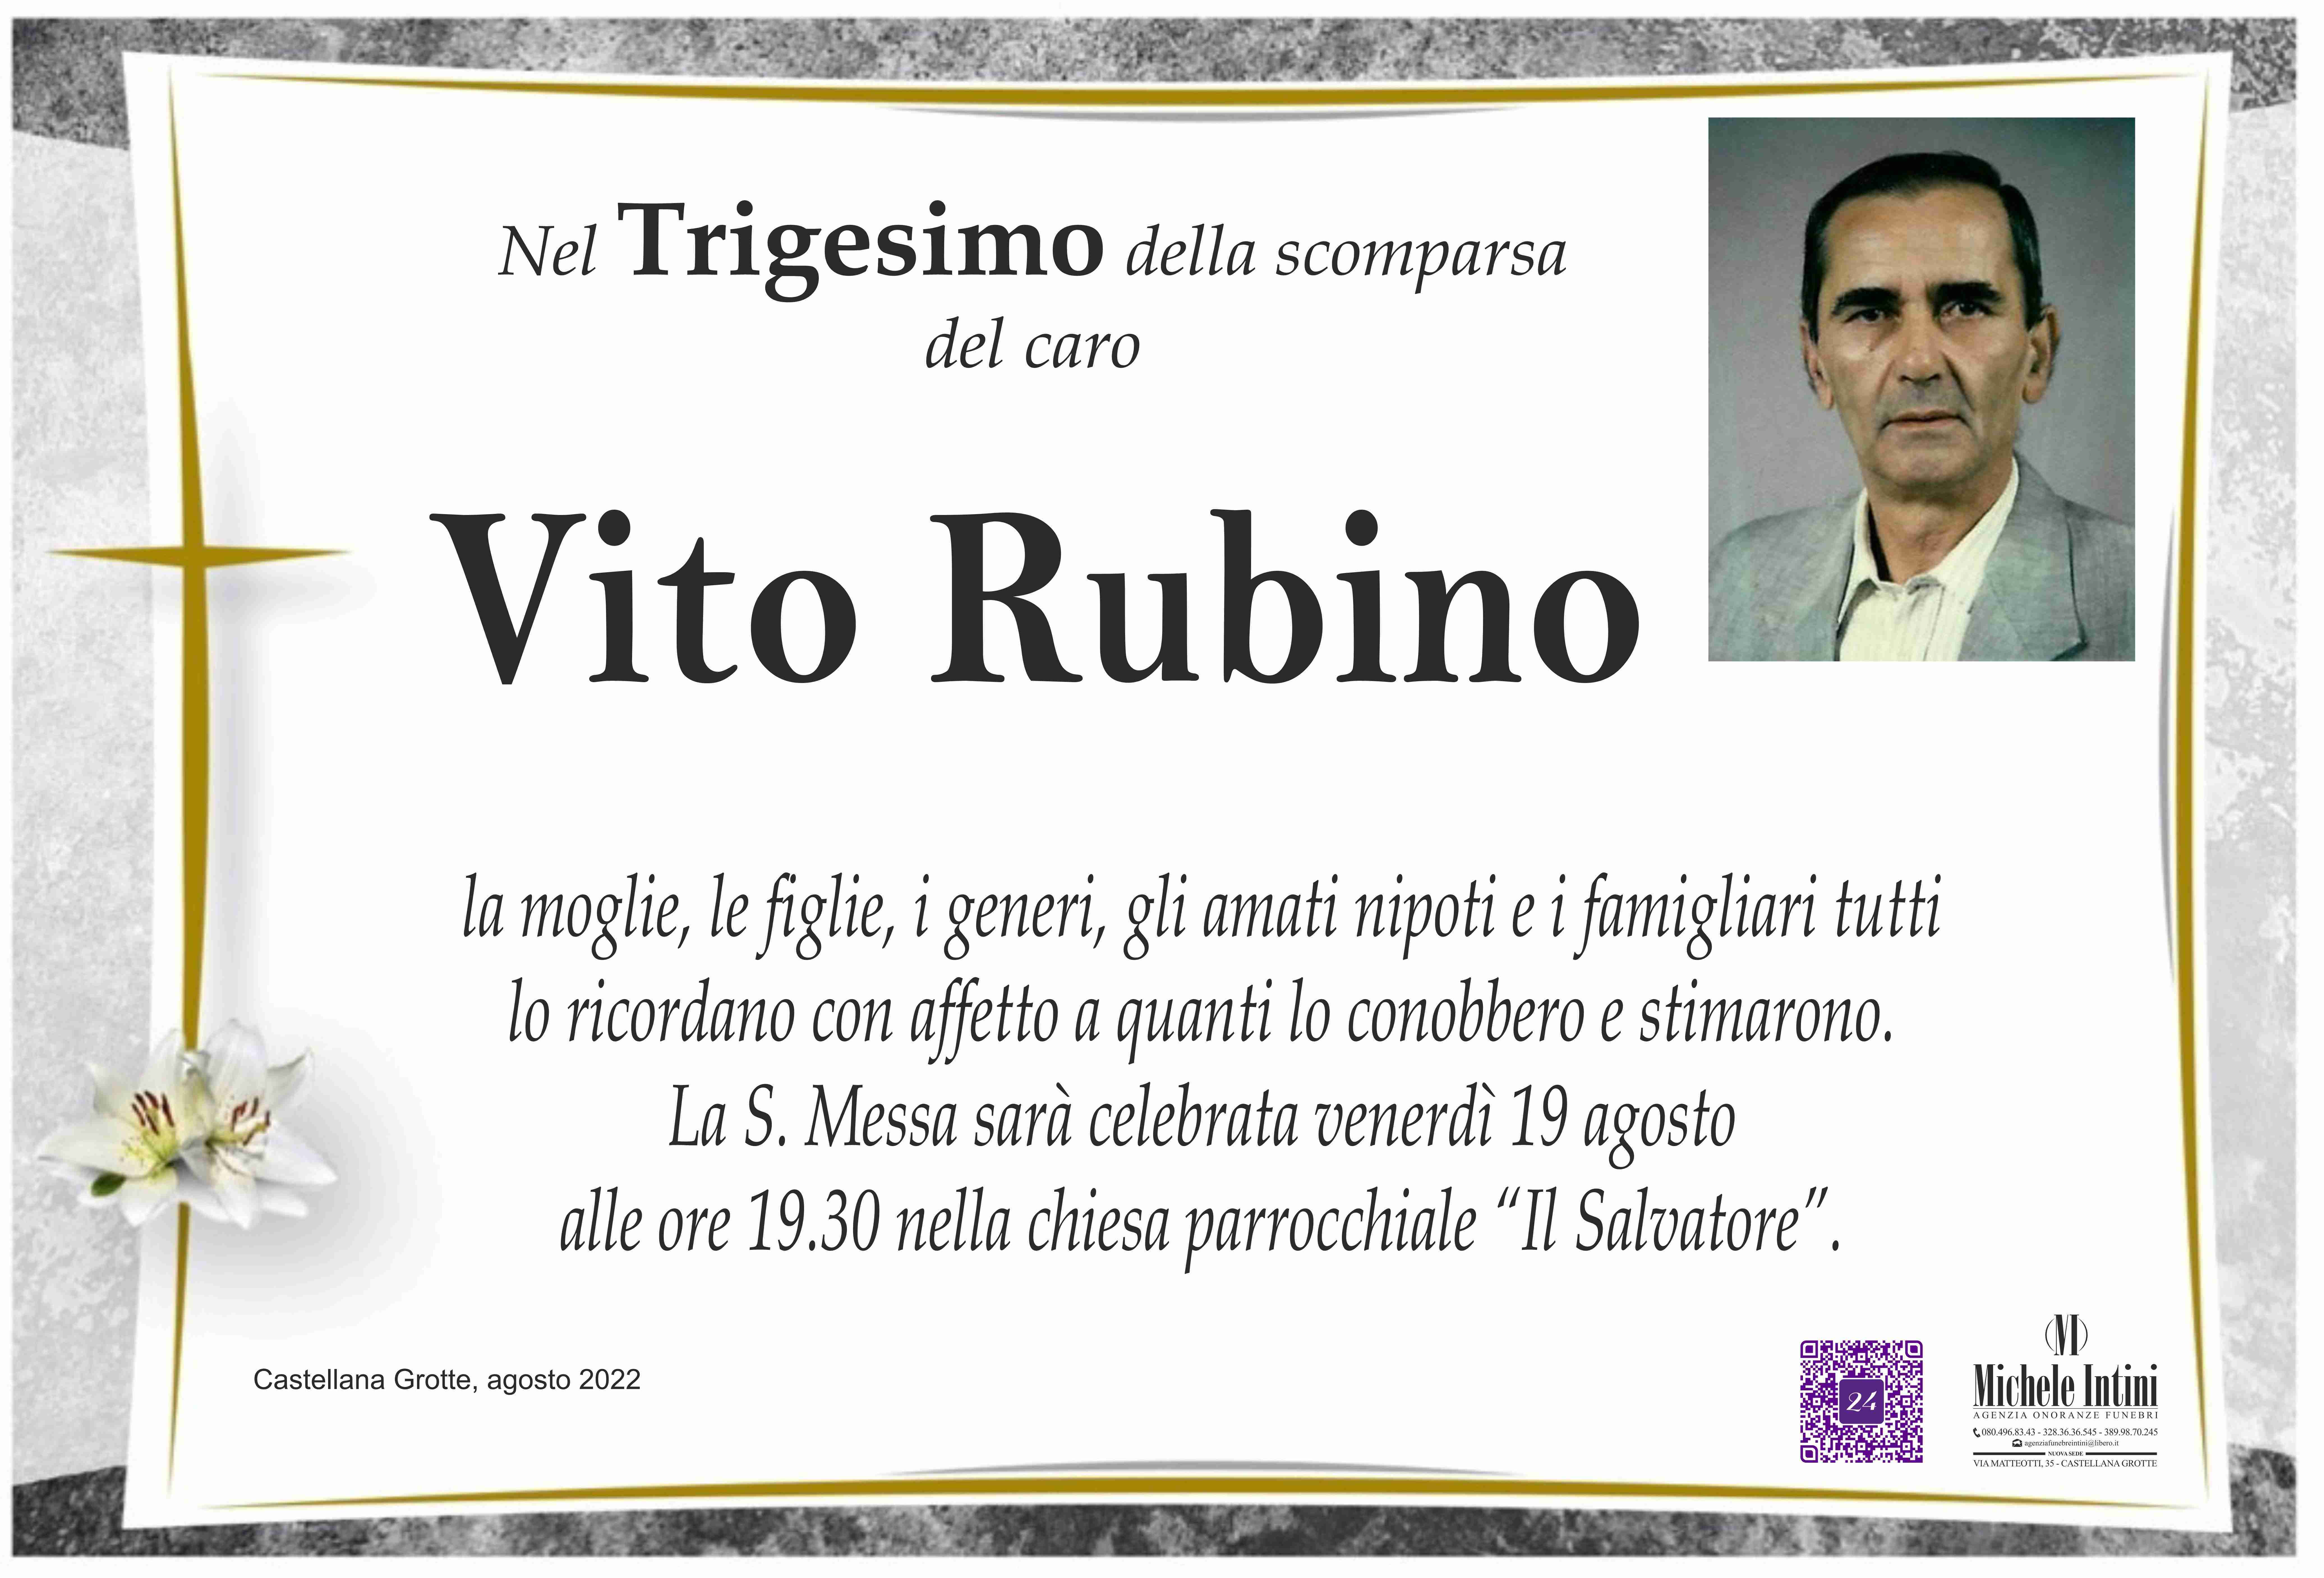 Vito Rubino